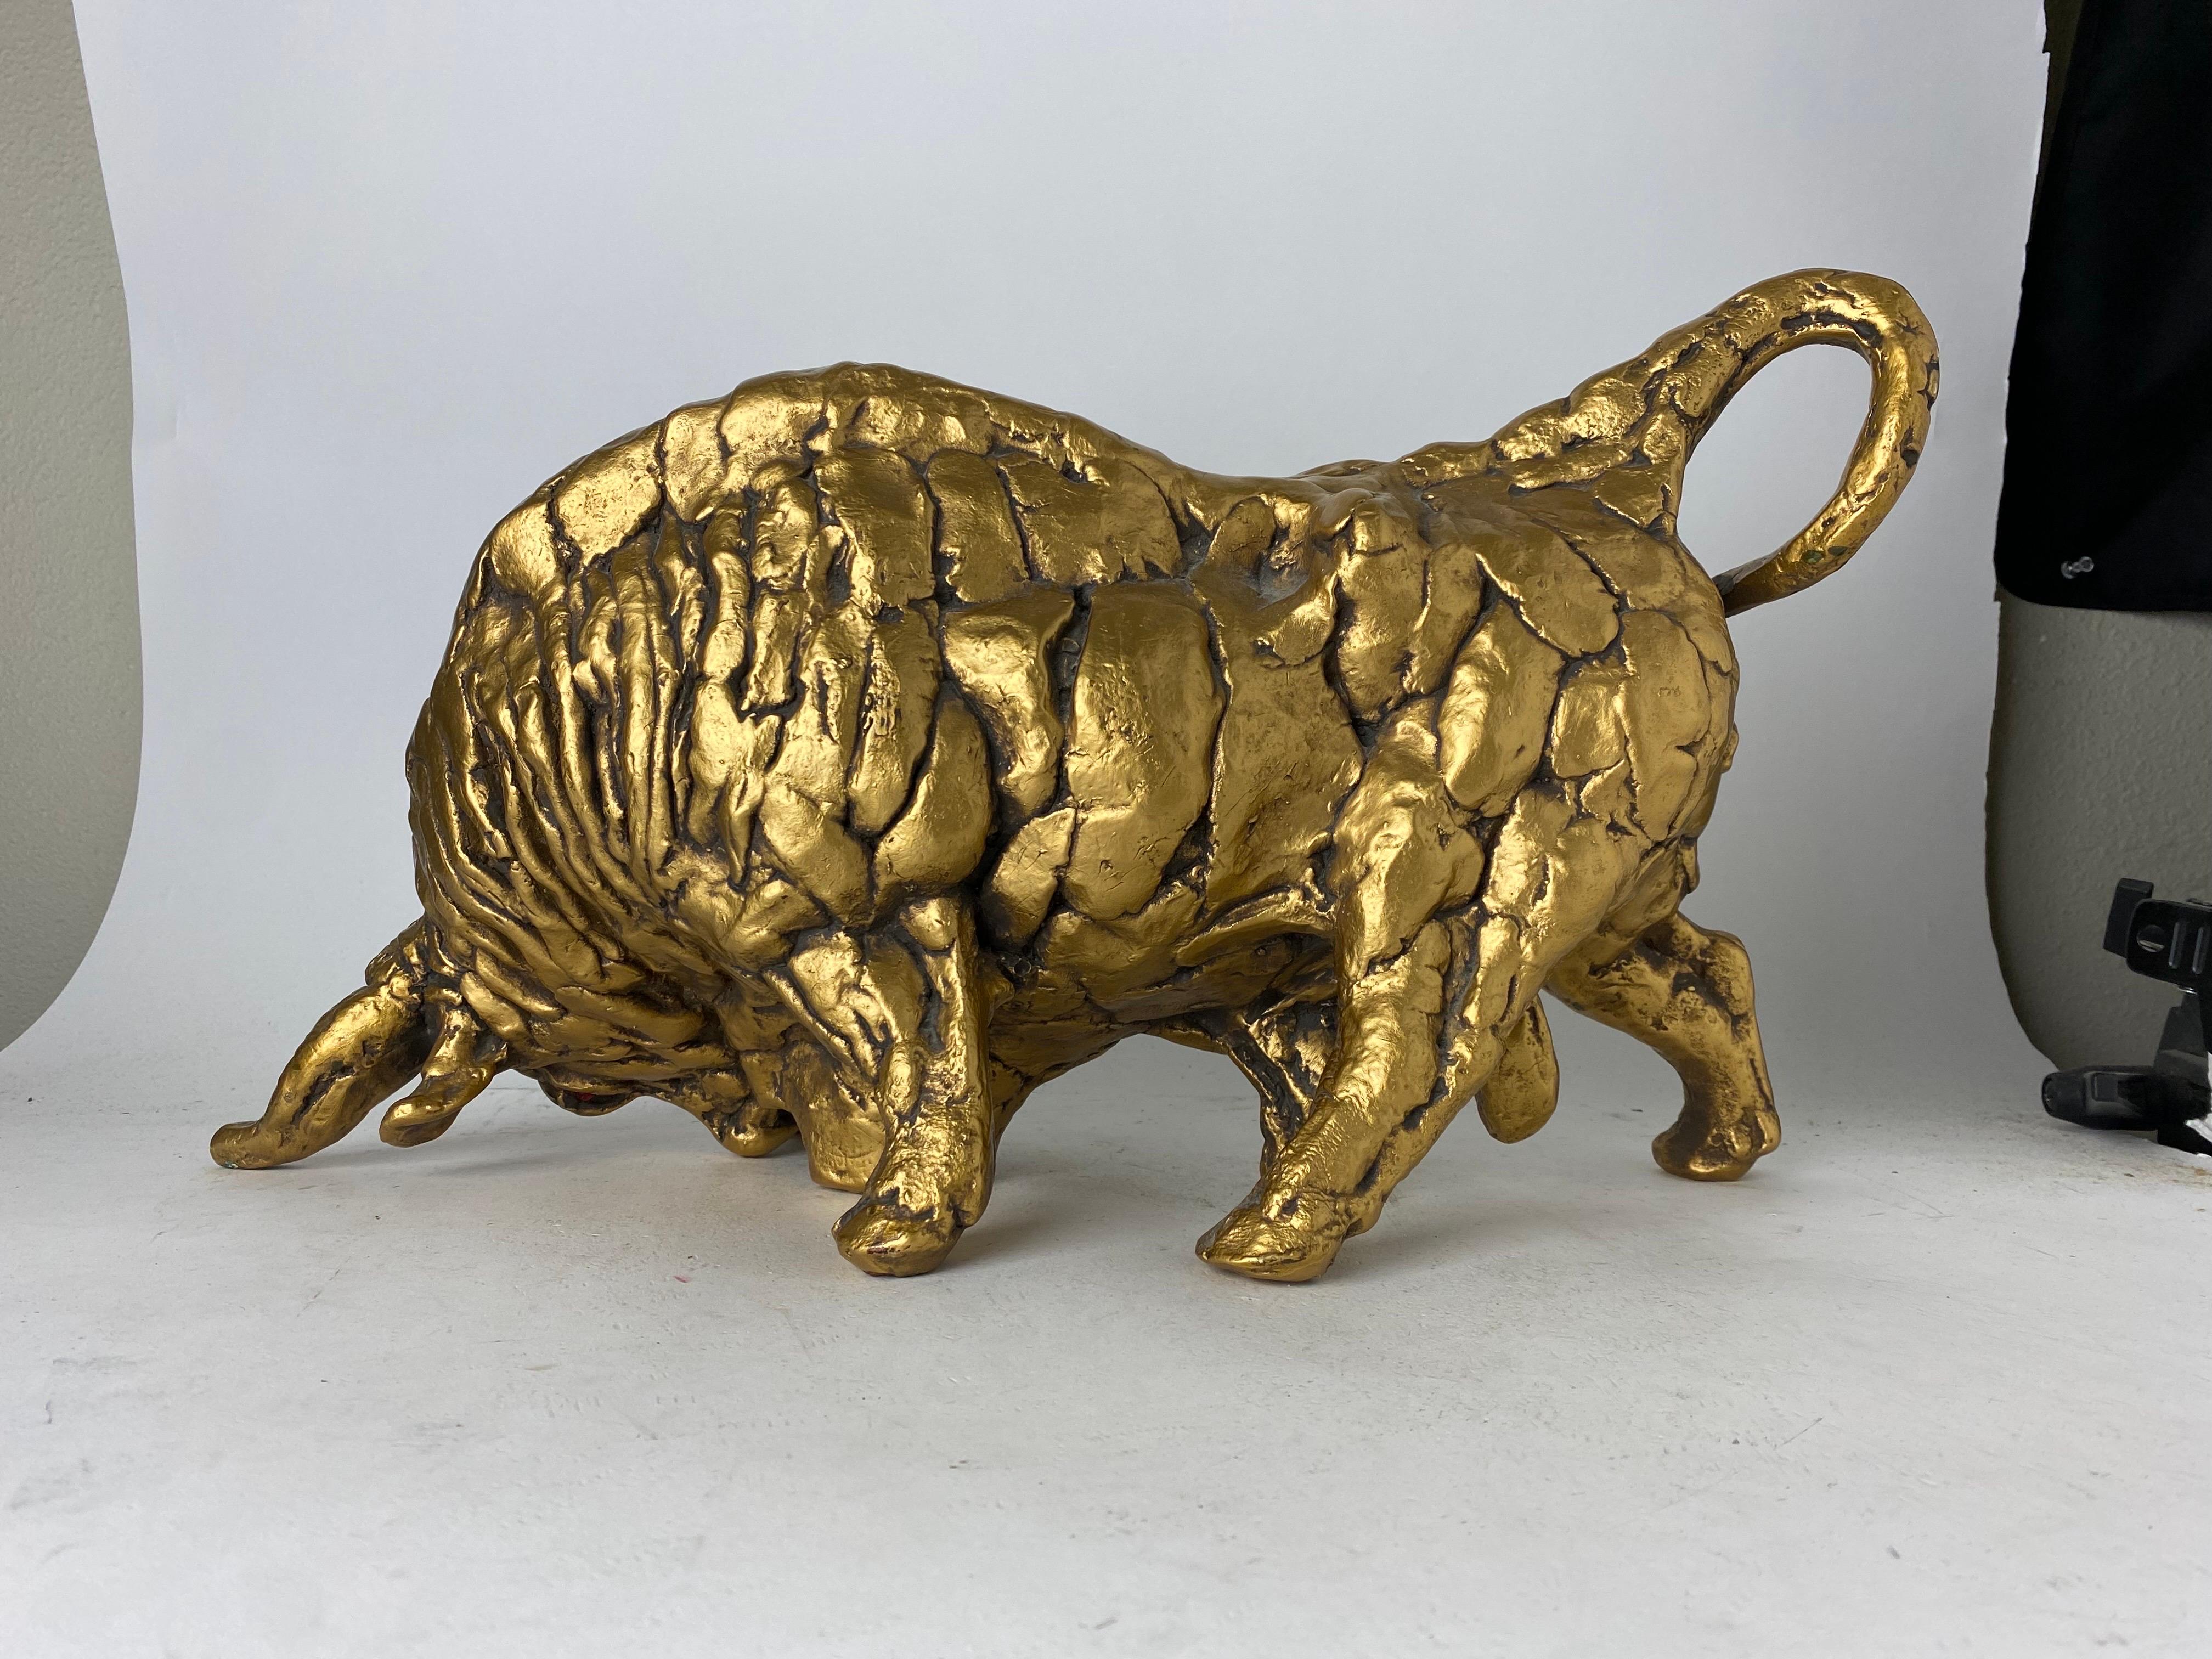 Nous vous proposons une magnifique sculpture en céramique dorée représentant un taureau en train de charger. À la fois vivant et artistique, ce taureau montre sa force et sa colère, prêt à s'en prendre à vous. La statue de taureau est complétée par